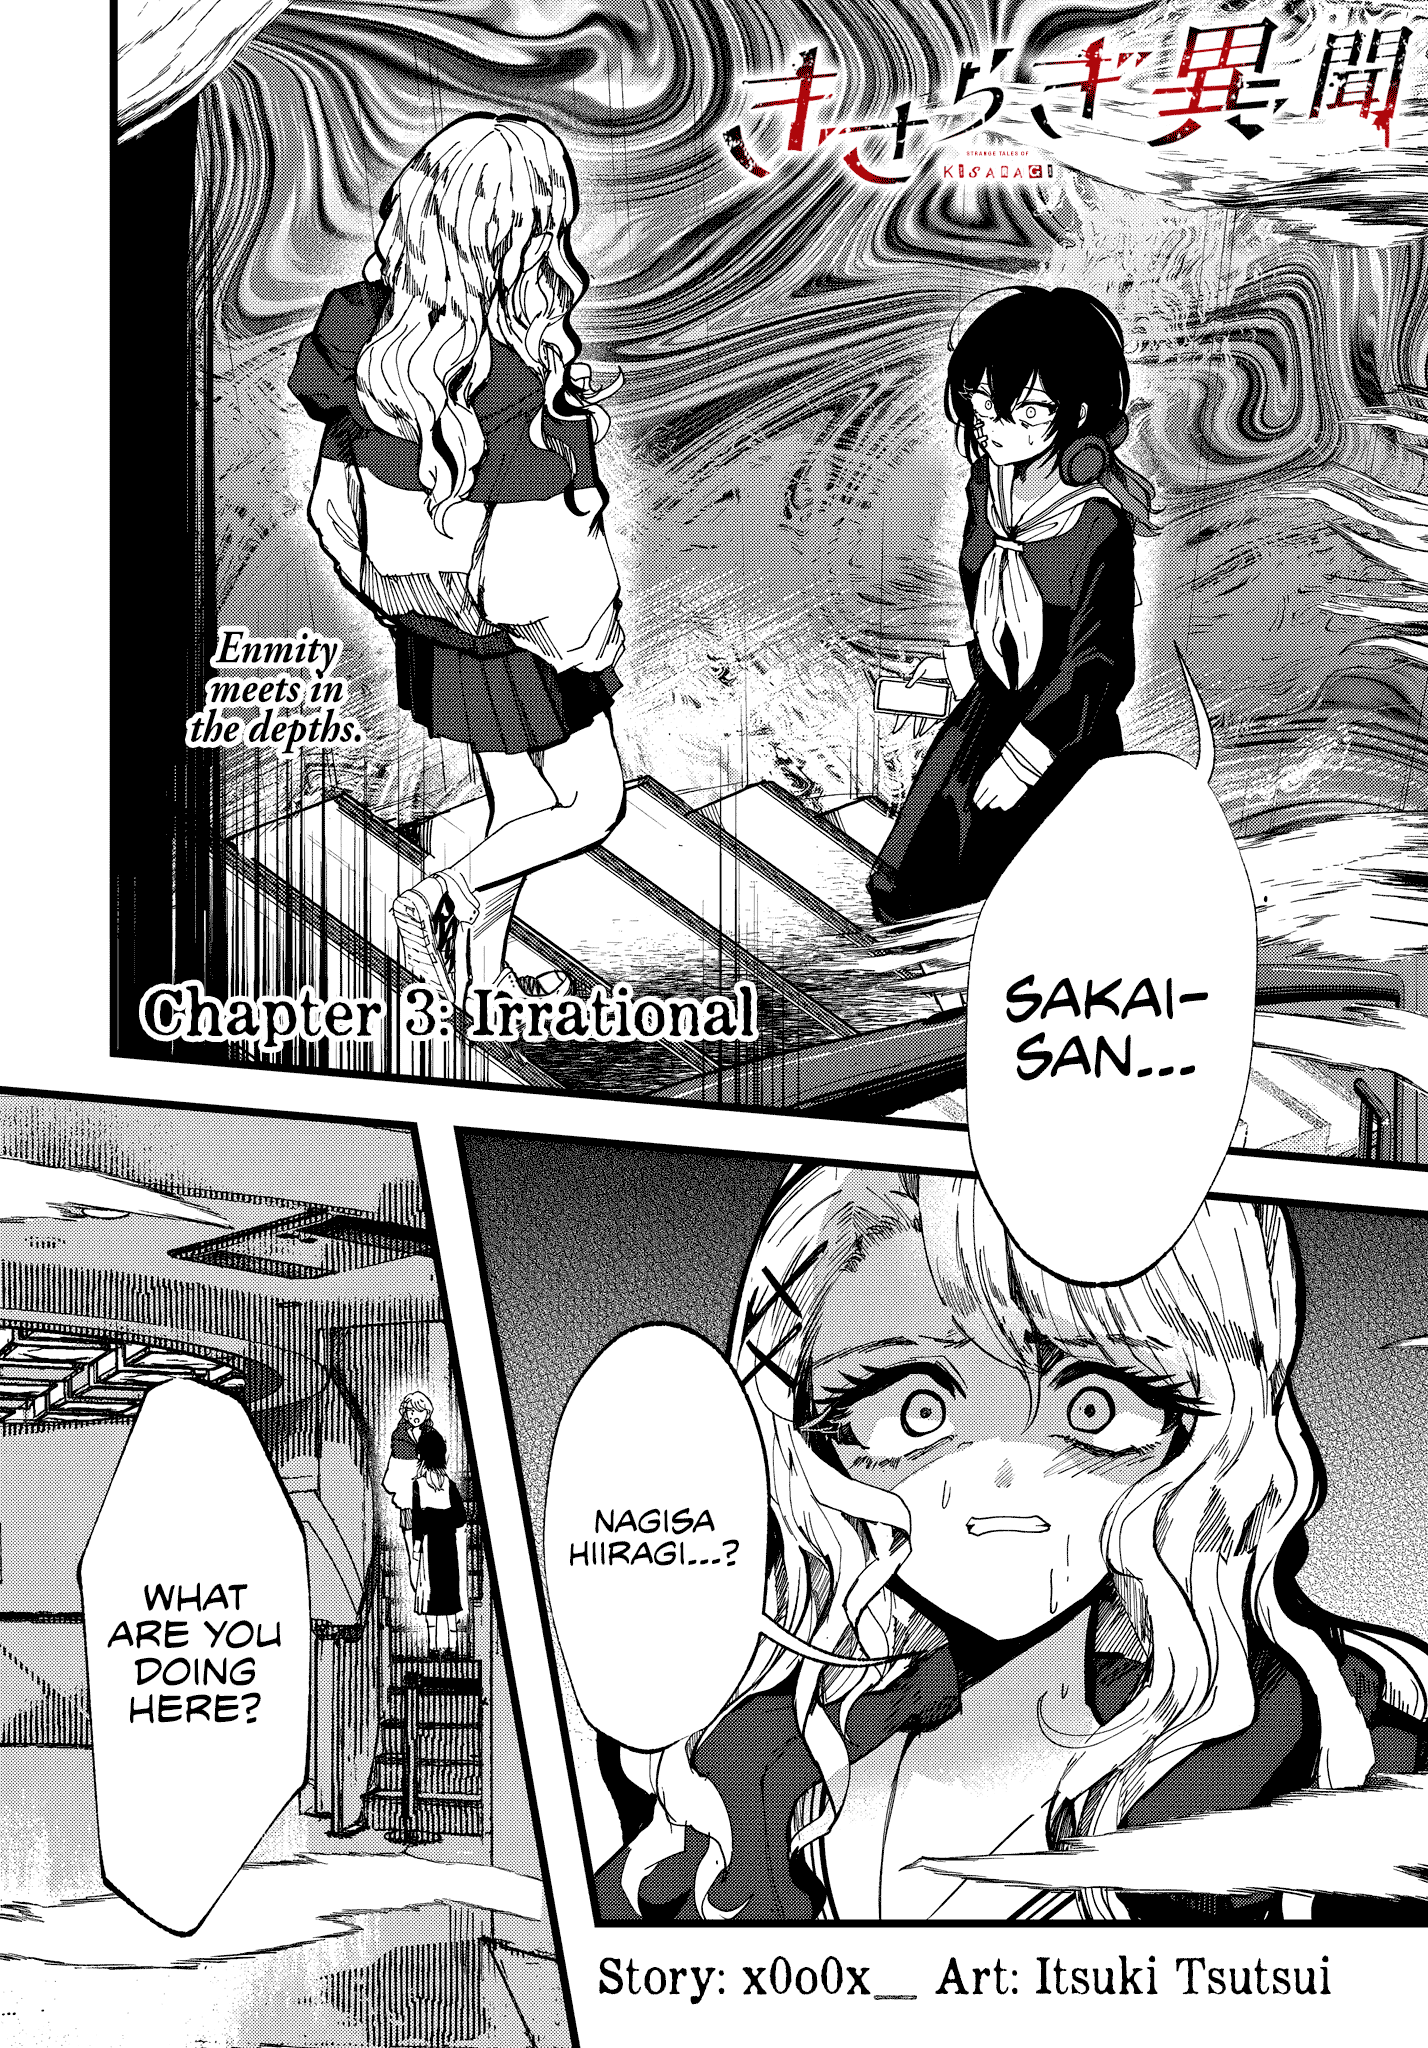 Strange Tales Of Kisaragi - Page 1